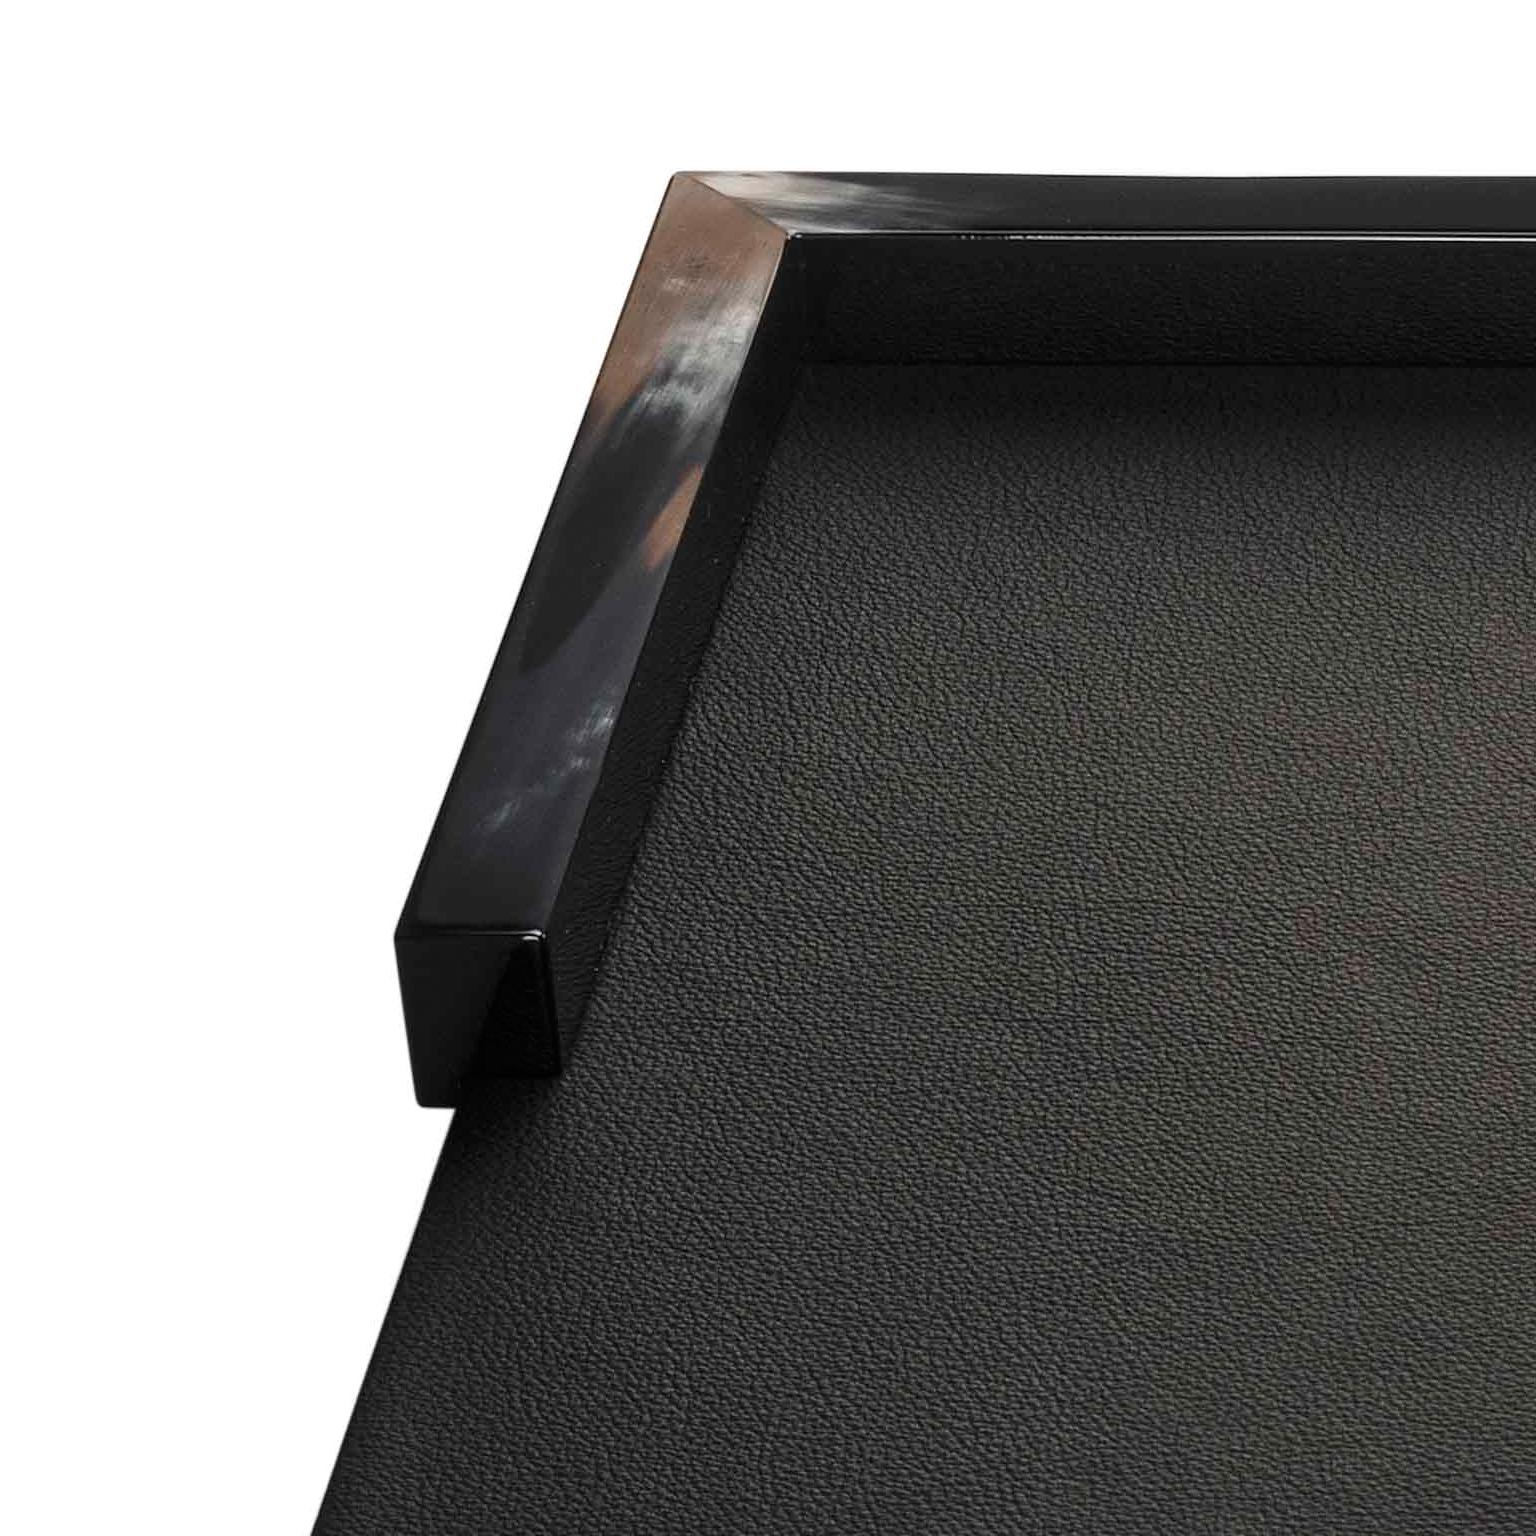 Calipso Desk Blotter in Black Leather with Corno Italiano Detailing, Mod. 5300s In New Condition For Sale In Recanati, Macerata